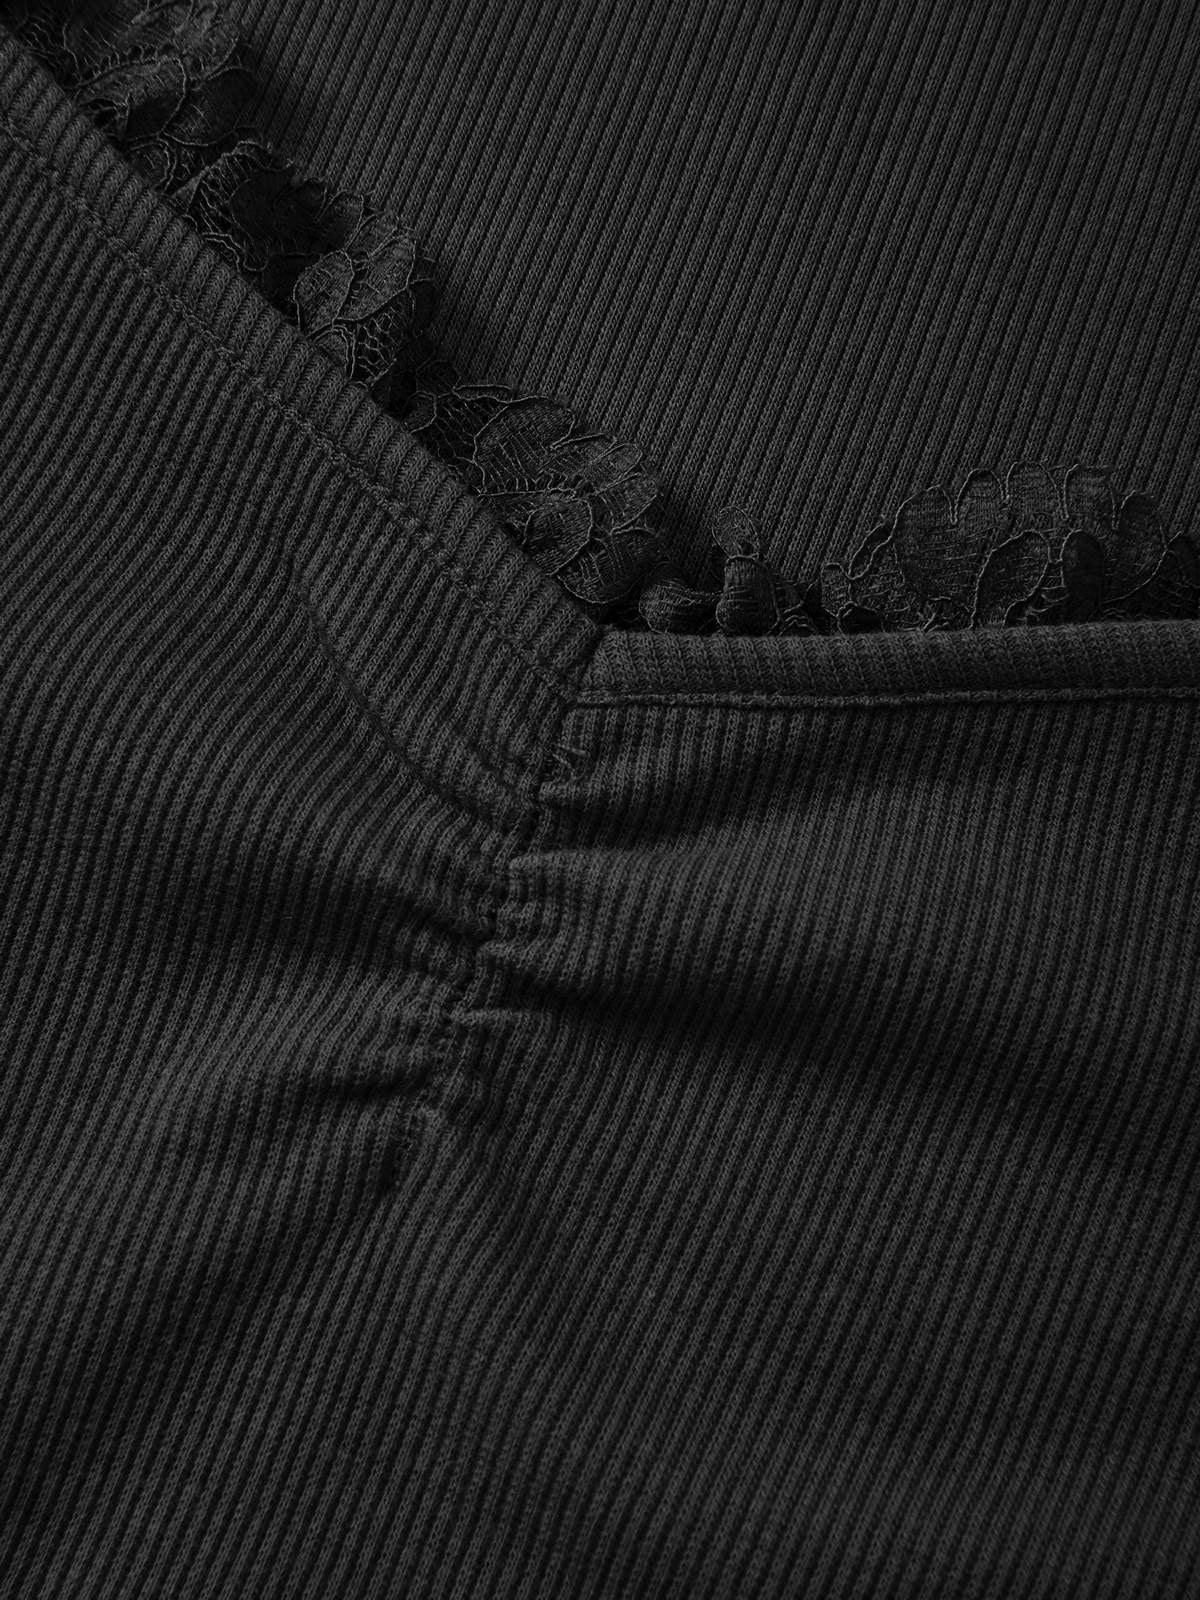 Top en tricot noir à manches longues avec détail en dentelle